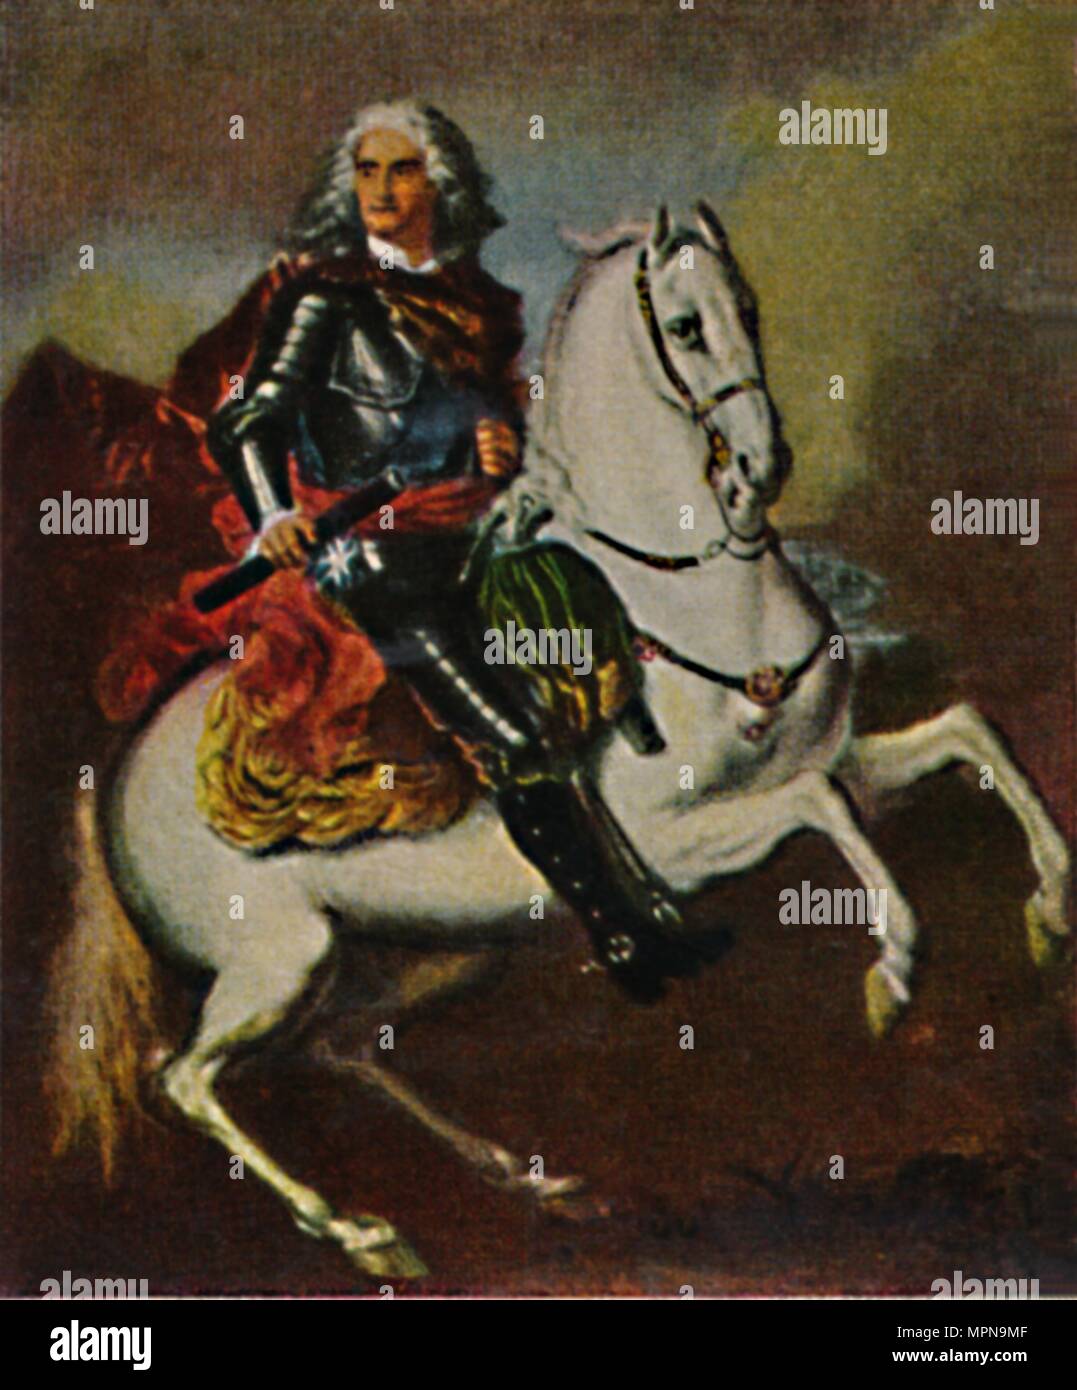 'August der Starke 1670-1733. - Gemälde von Silvestre', 1934. Artist: Unknown. Stock Photo